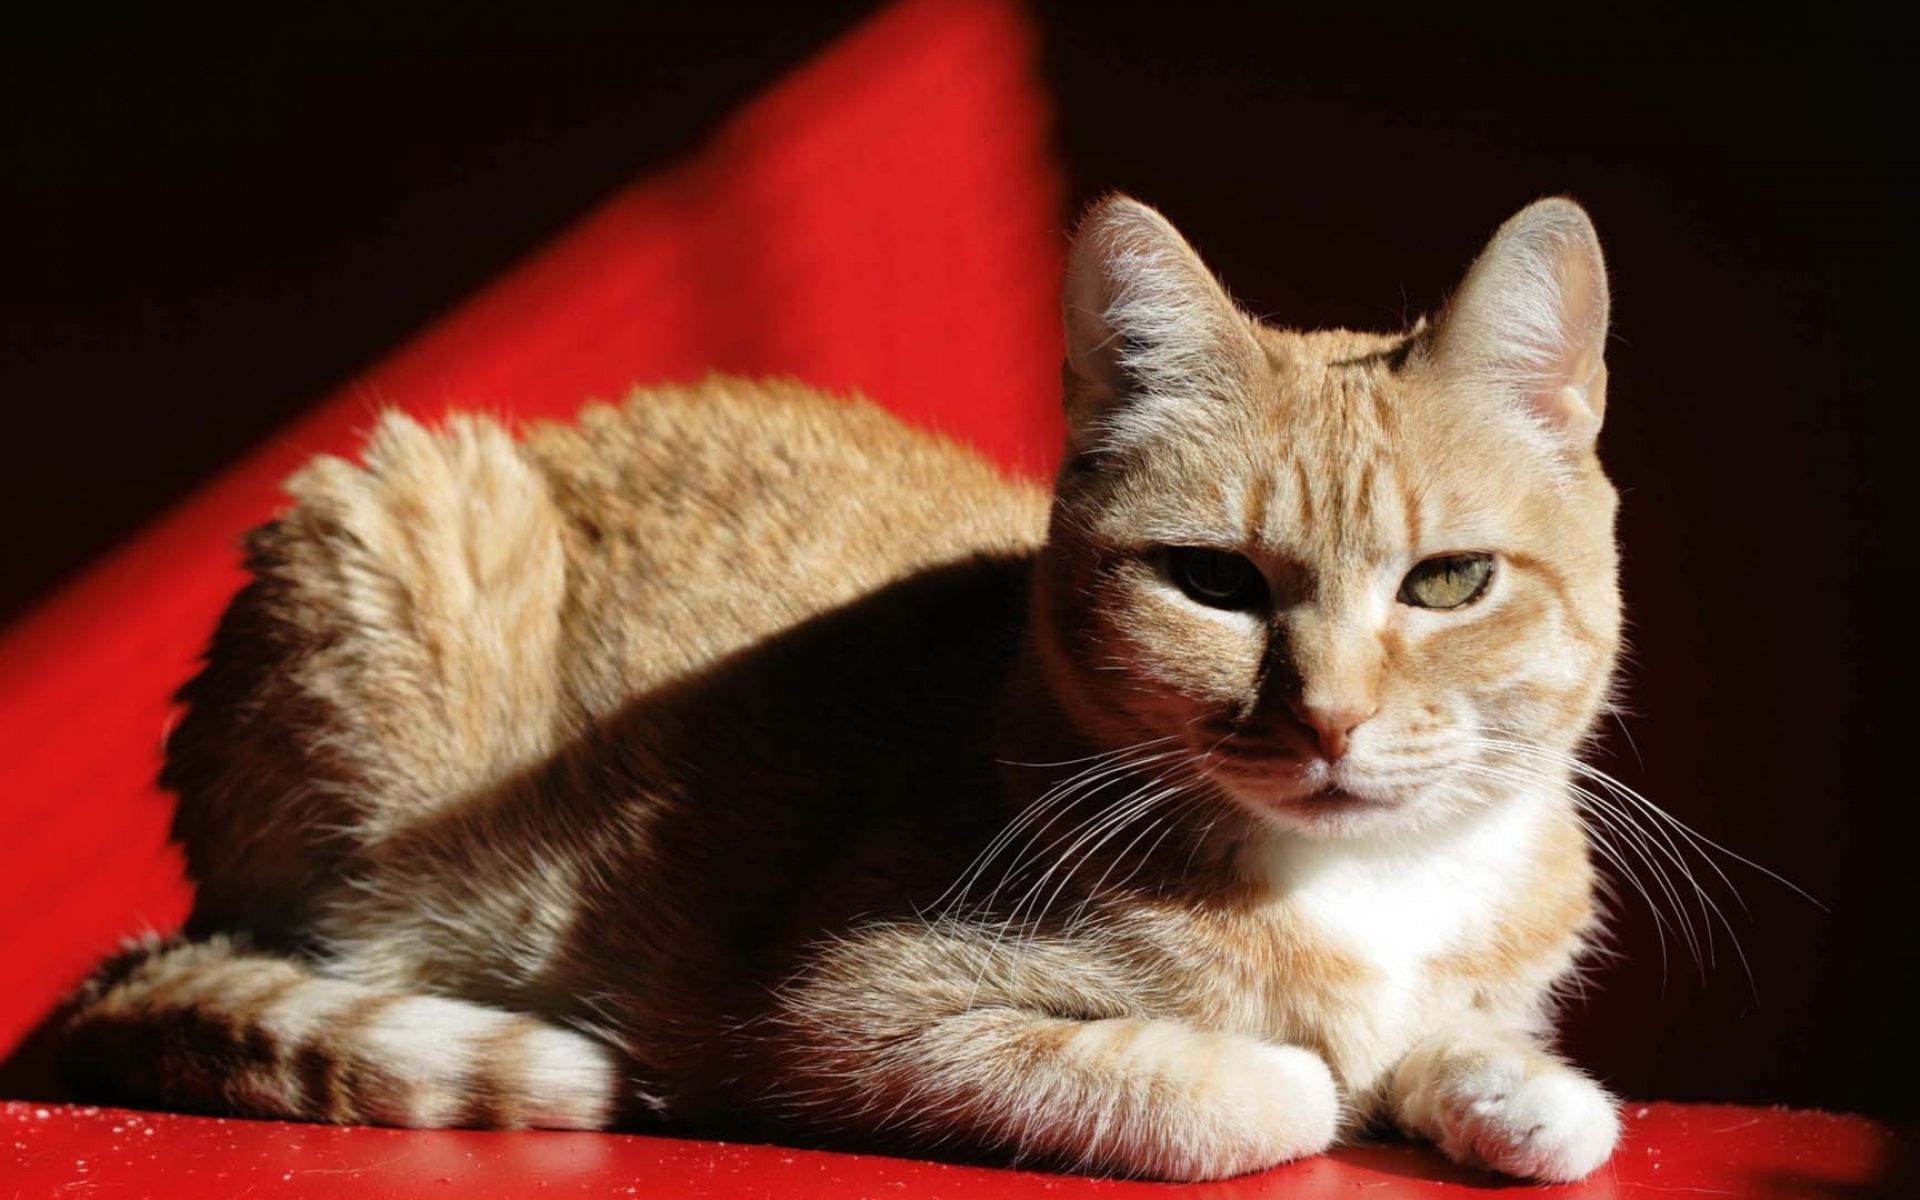 Покажи red cat. Европейский короткошерстный кот рыжий. Европейская кошка короткошерстная красный тэбби. Европейская короткошерстная кошка рыжая. Кошка на Красном фоне.